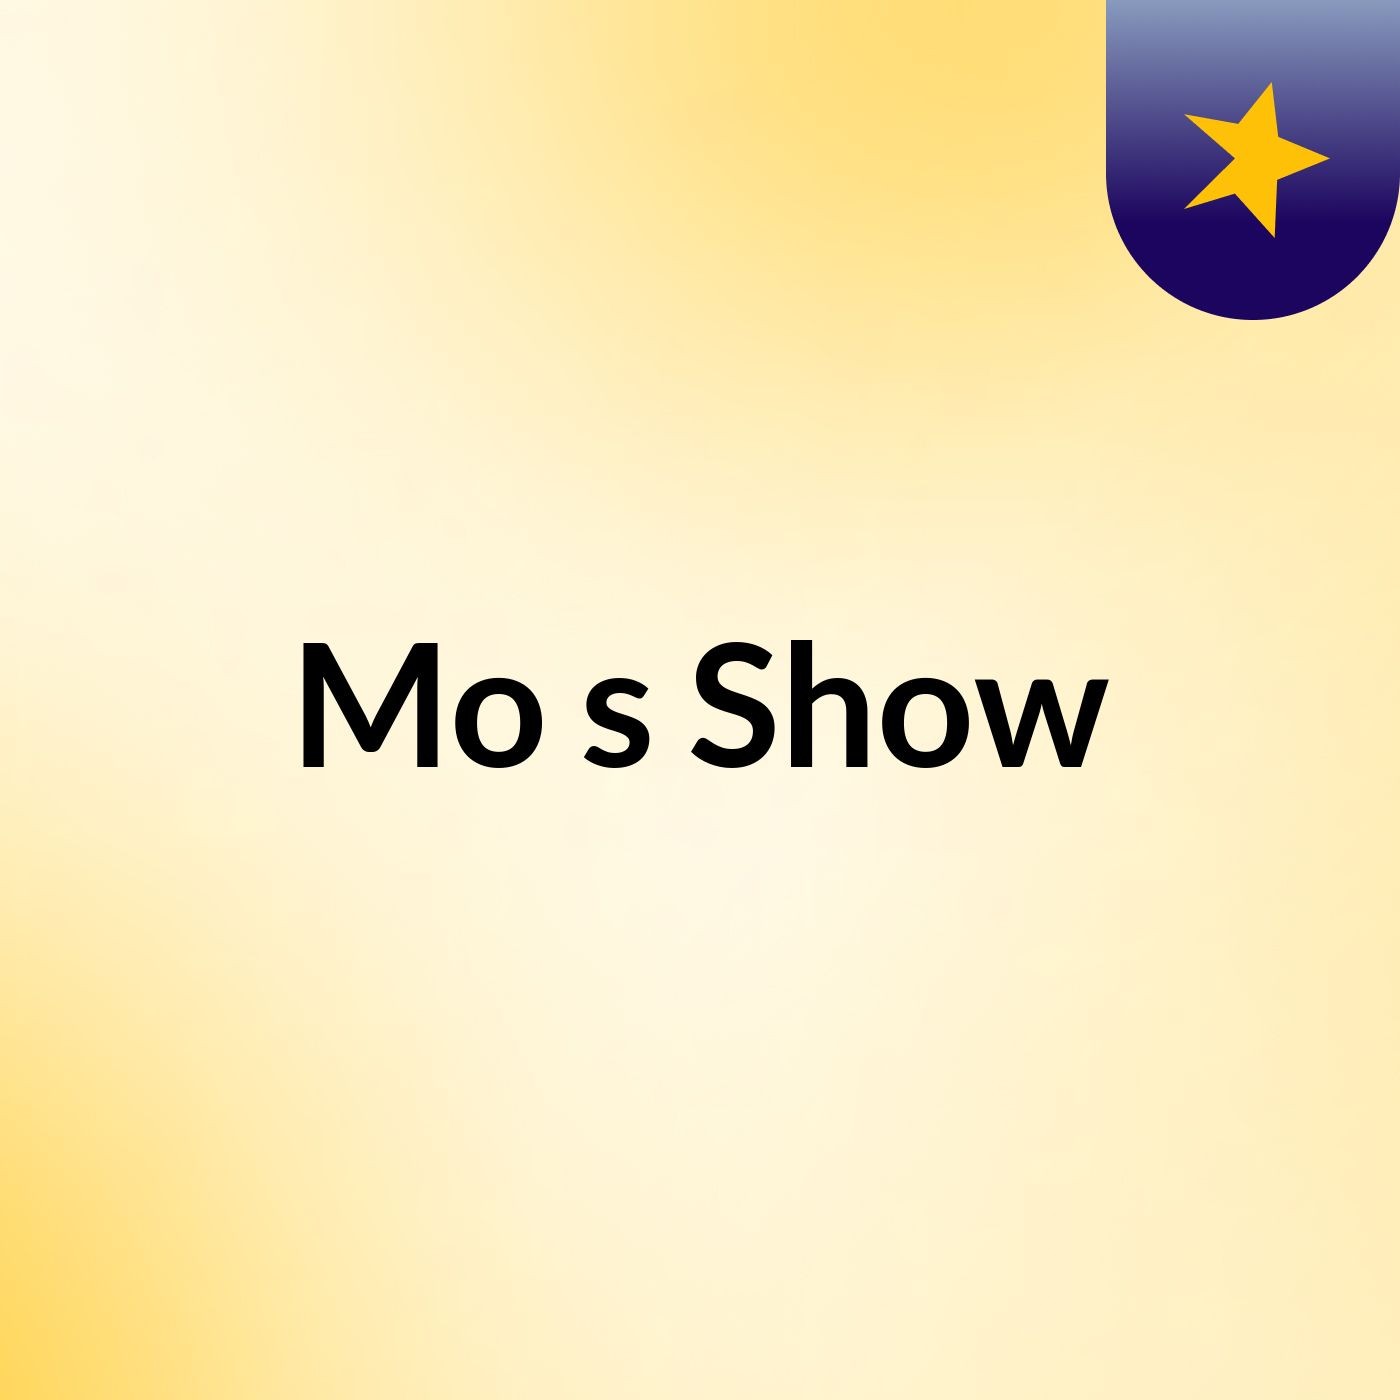 Mo's Show